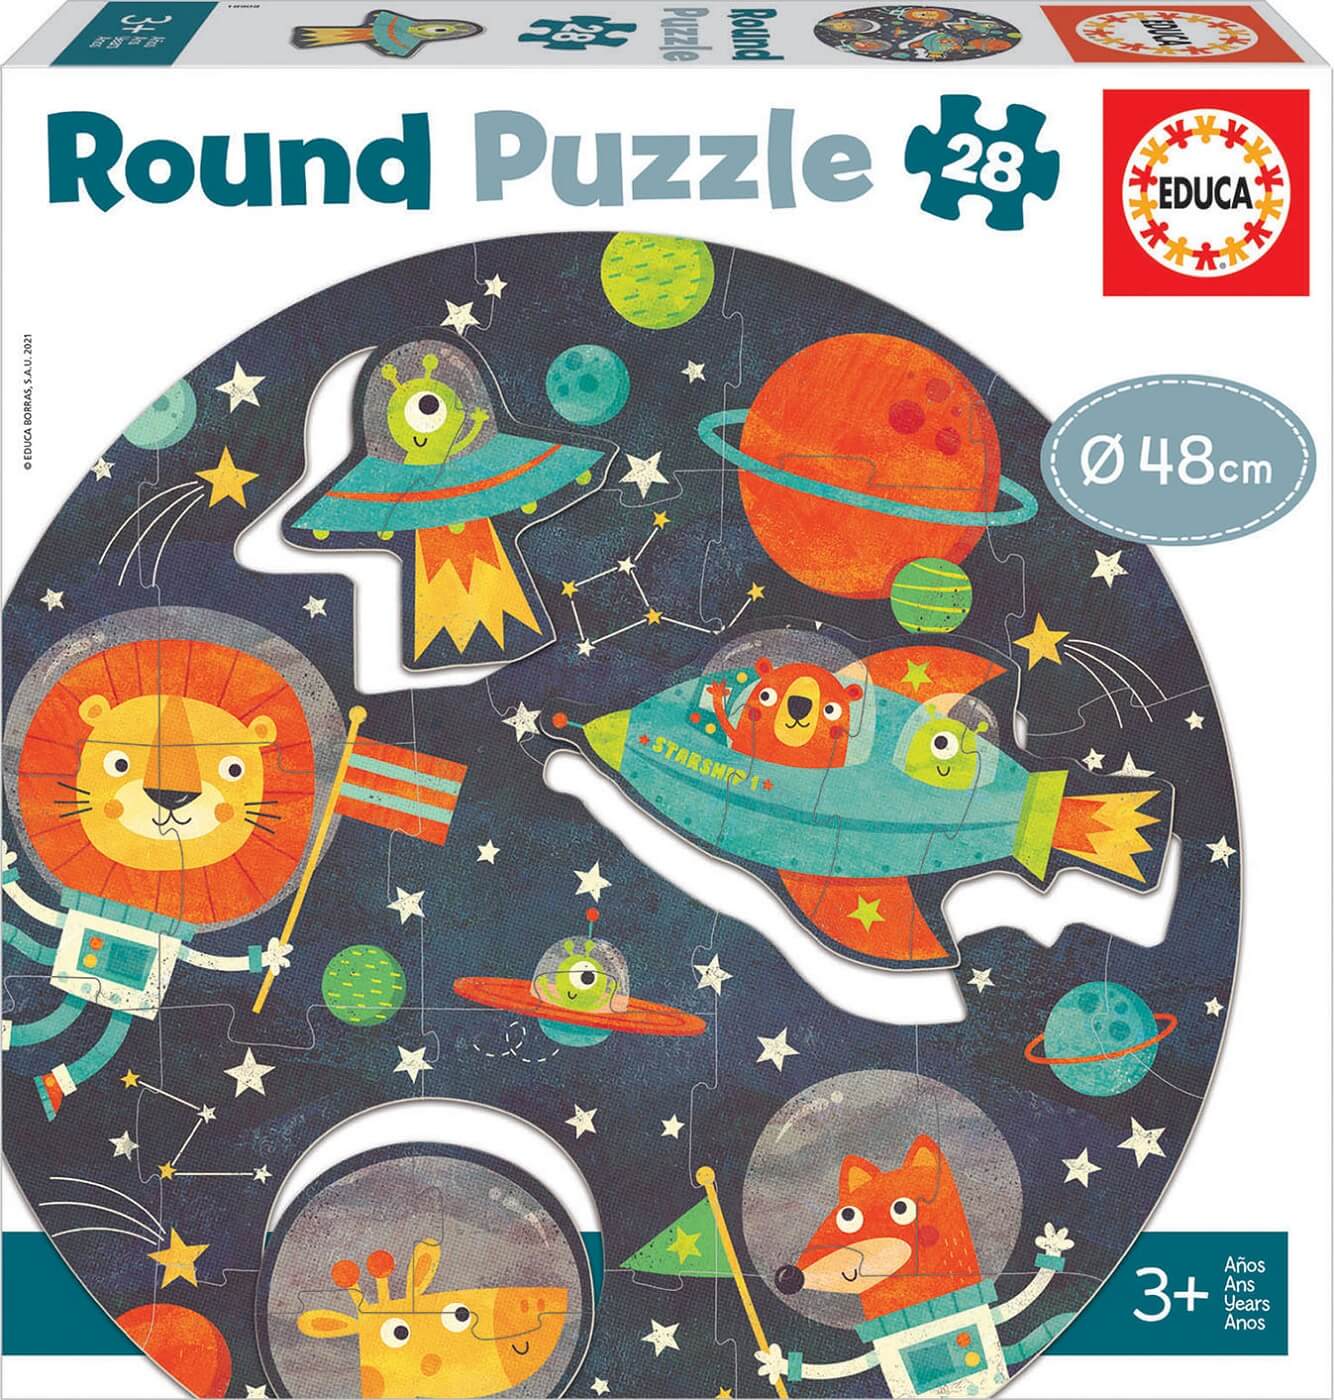 28 Round Puzzle El Espacio ( Educa 18908 ) imagen b